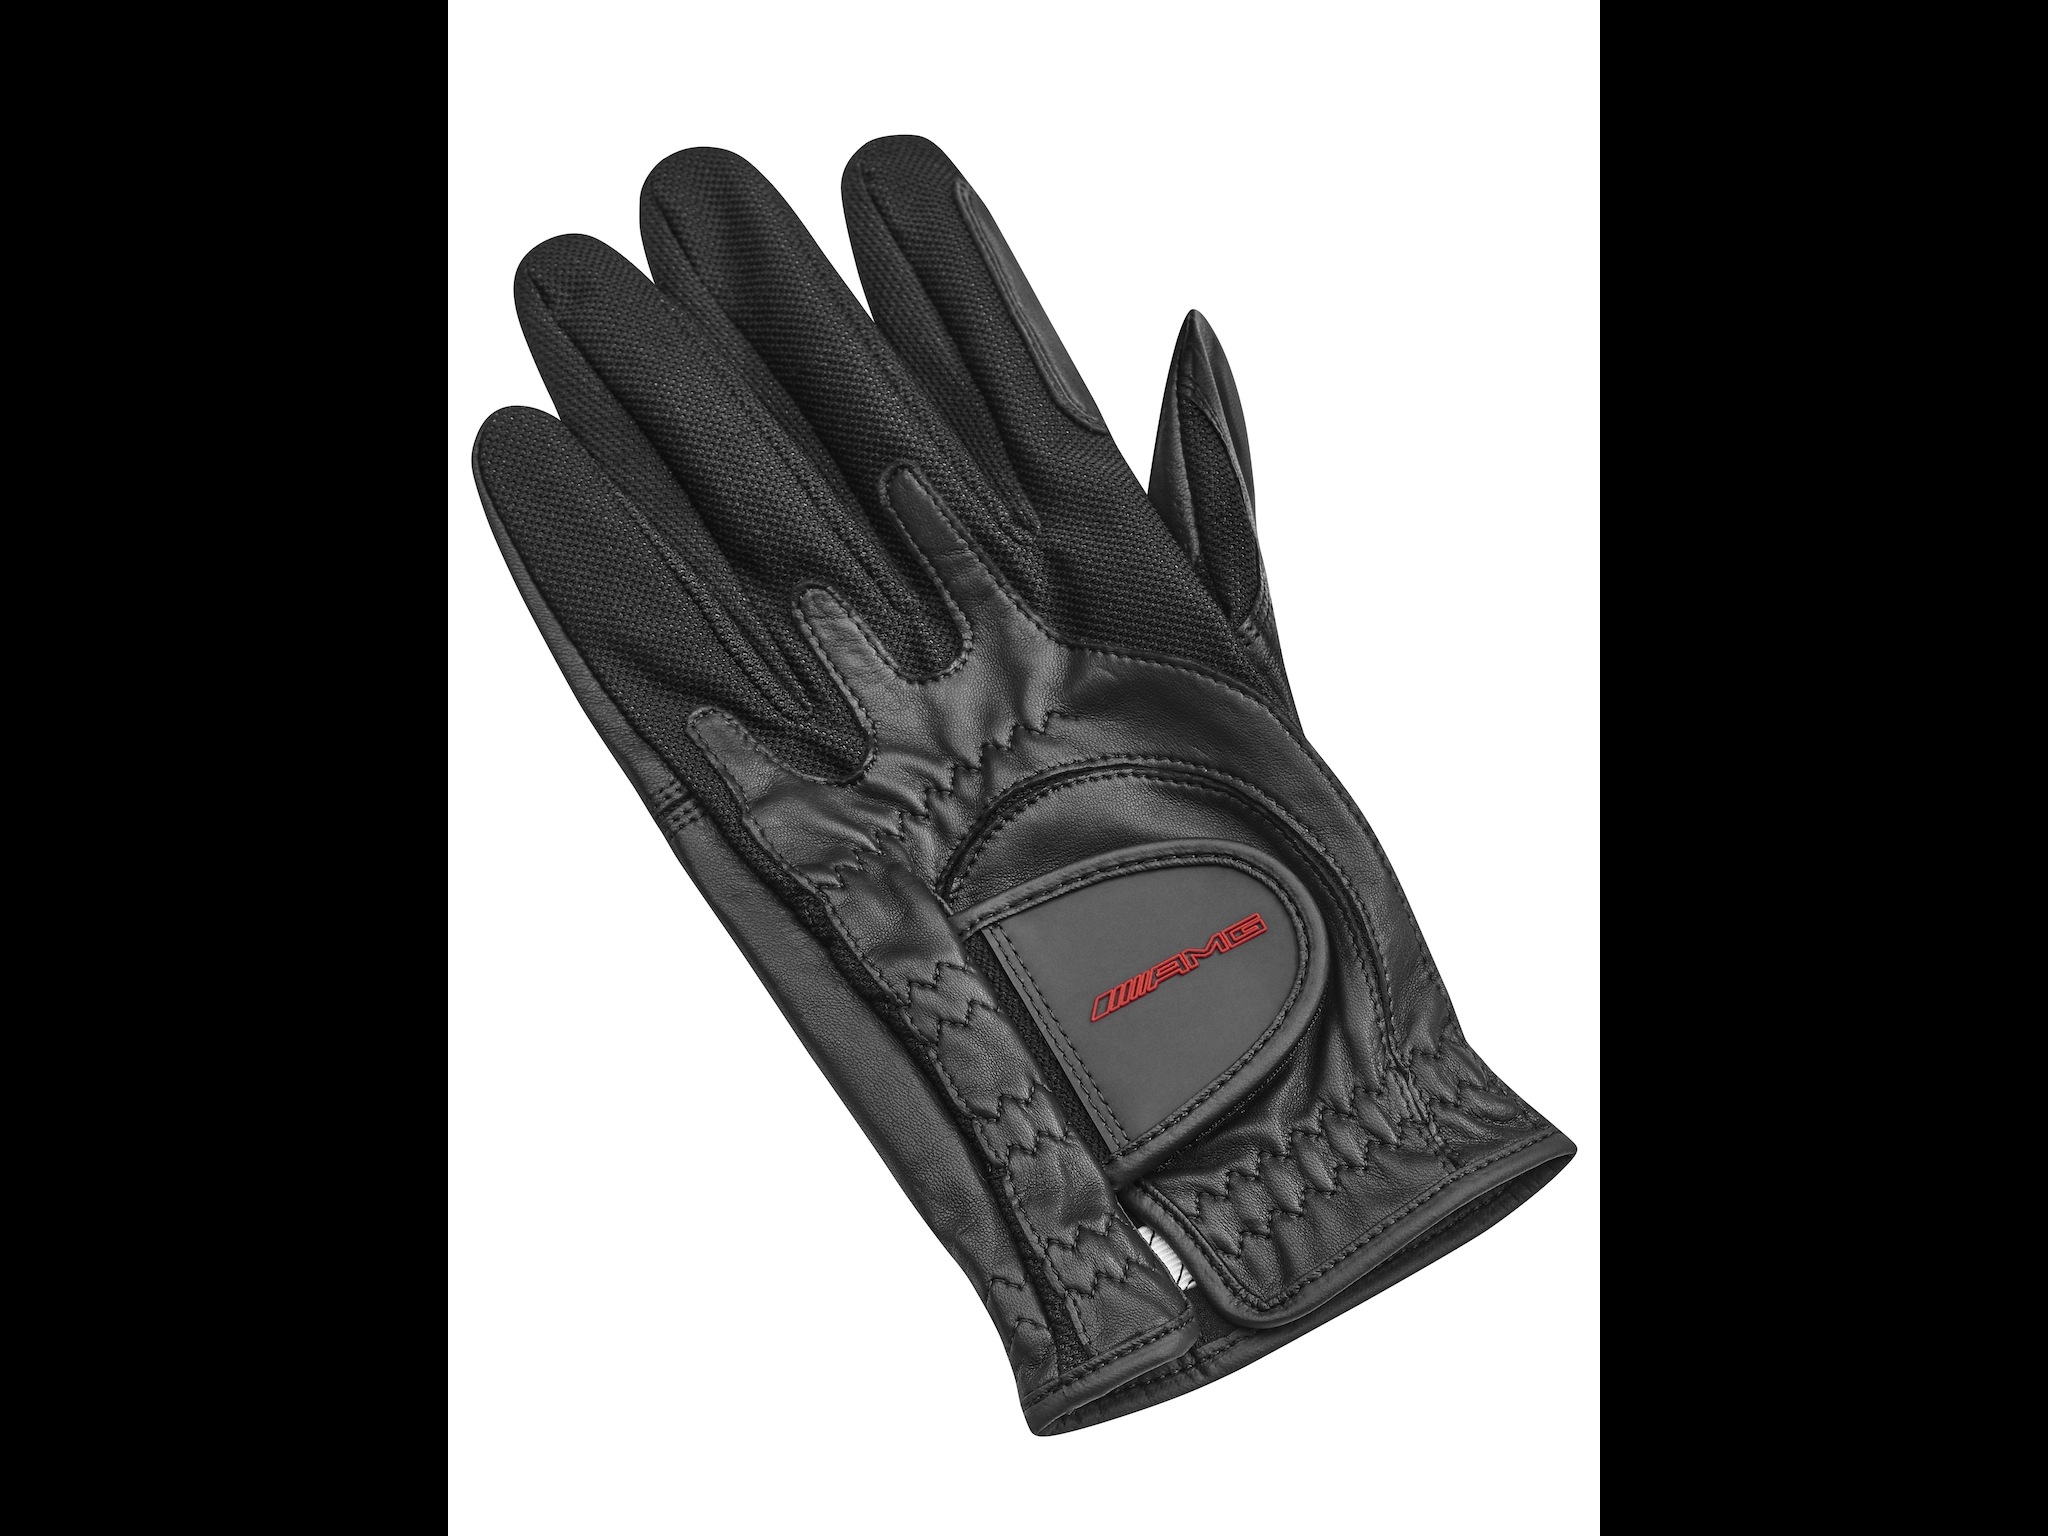 AMG Golf-Handschuh - schwarz, one size